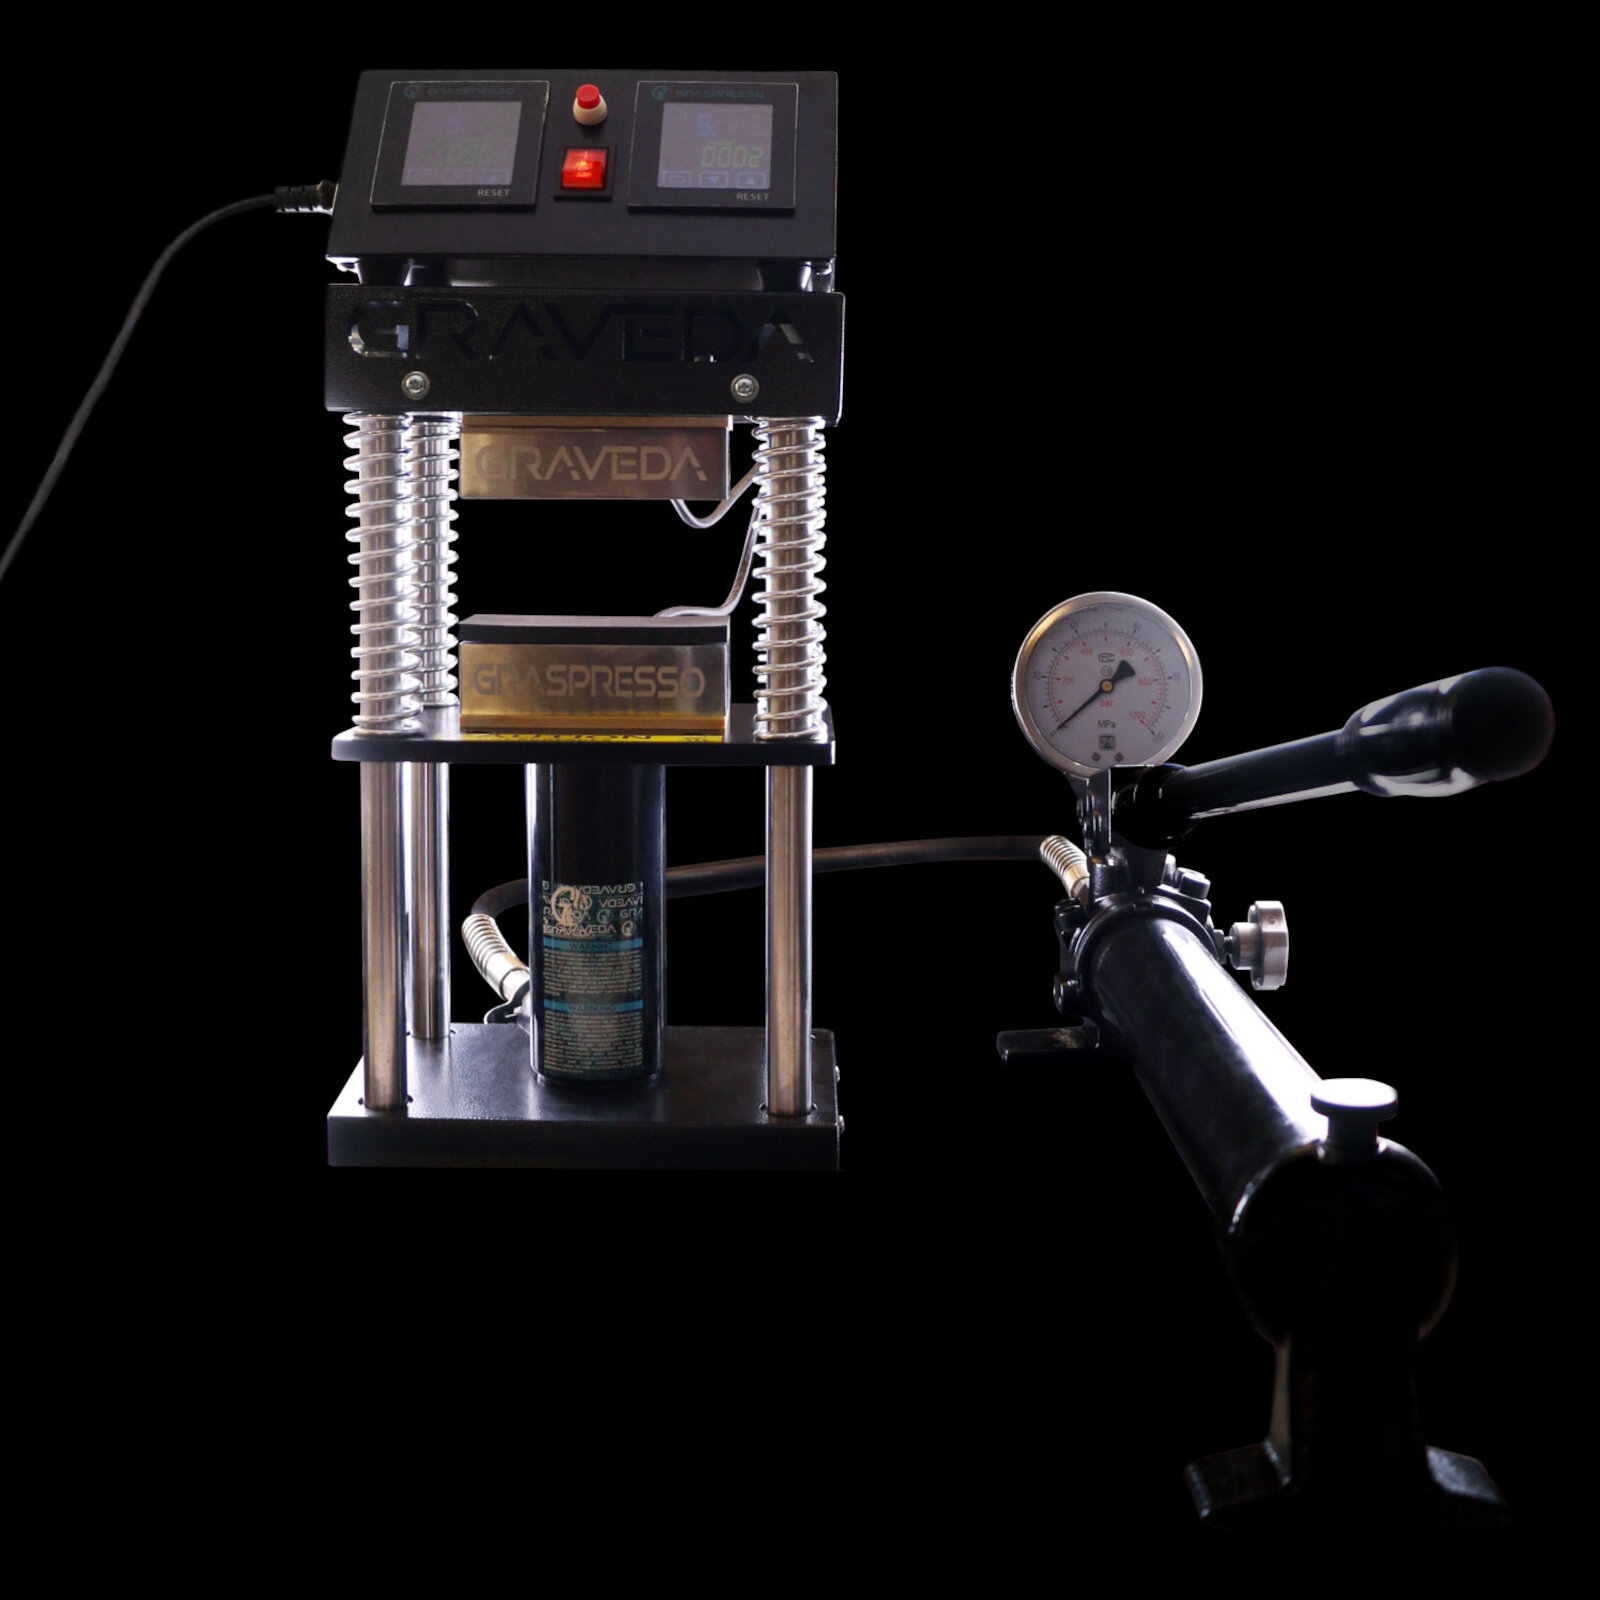 Venta de prensa para rosin Graspresso EPIC 15T de Graveda